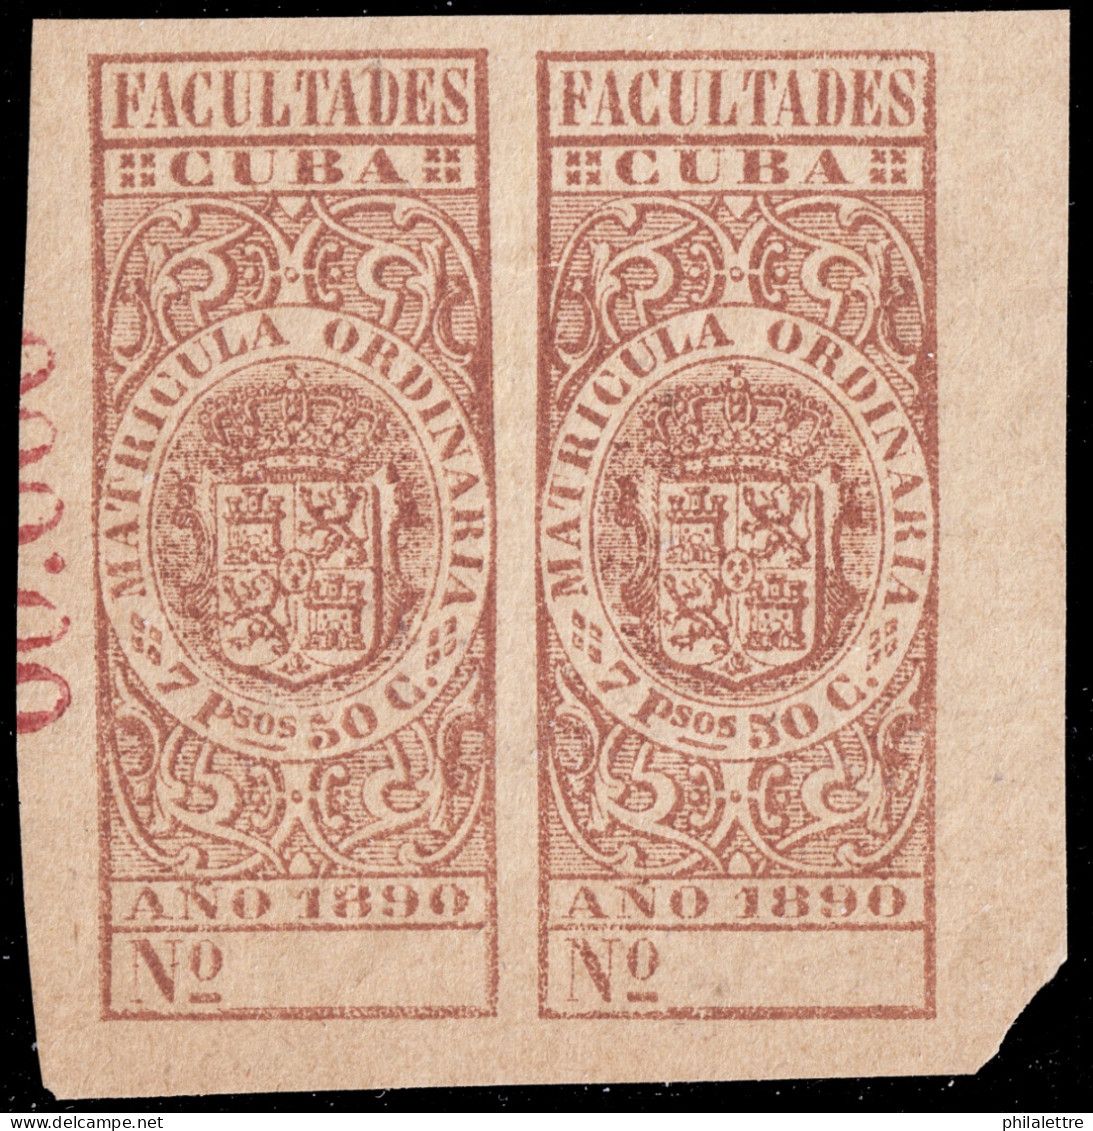 ESPAGNE / ESPANA - COLONIAS (Cuba) 1890 Matricula Ordinaria "FACULTADES" Fulcher 1059 2x 7P50 MUESTRA (00.000) - Nuevo** - Kuba (1874-1898)